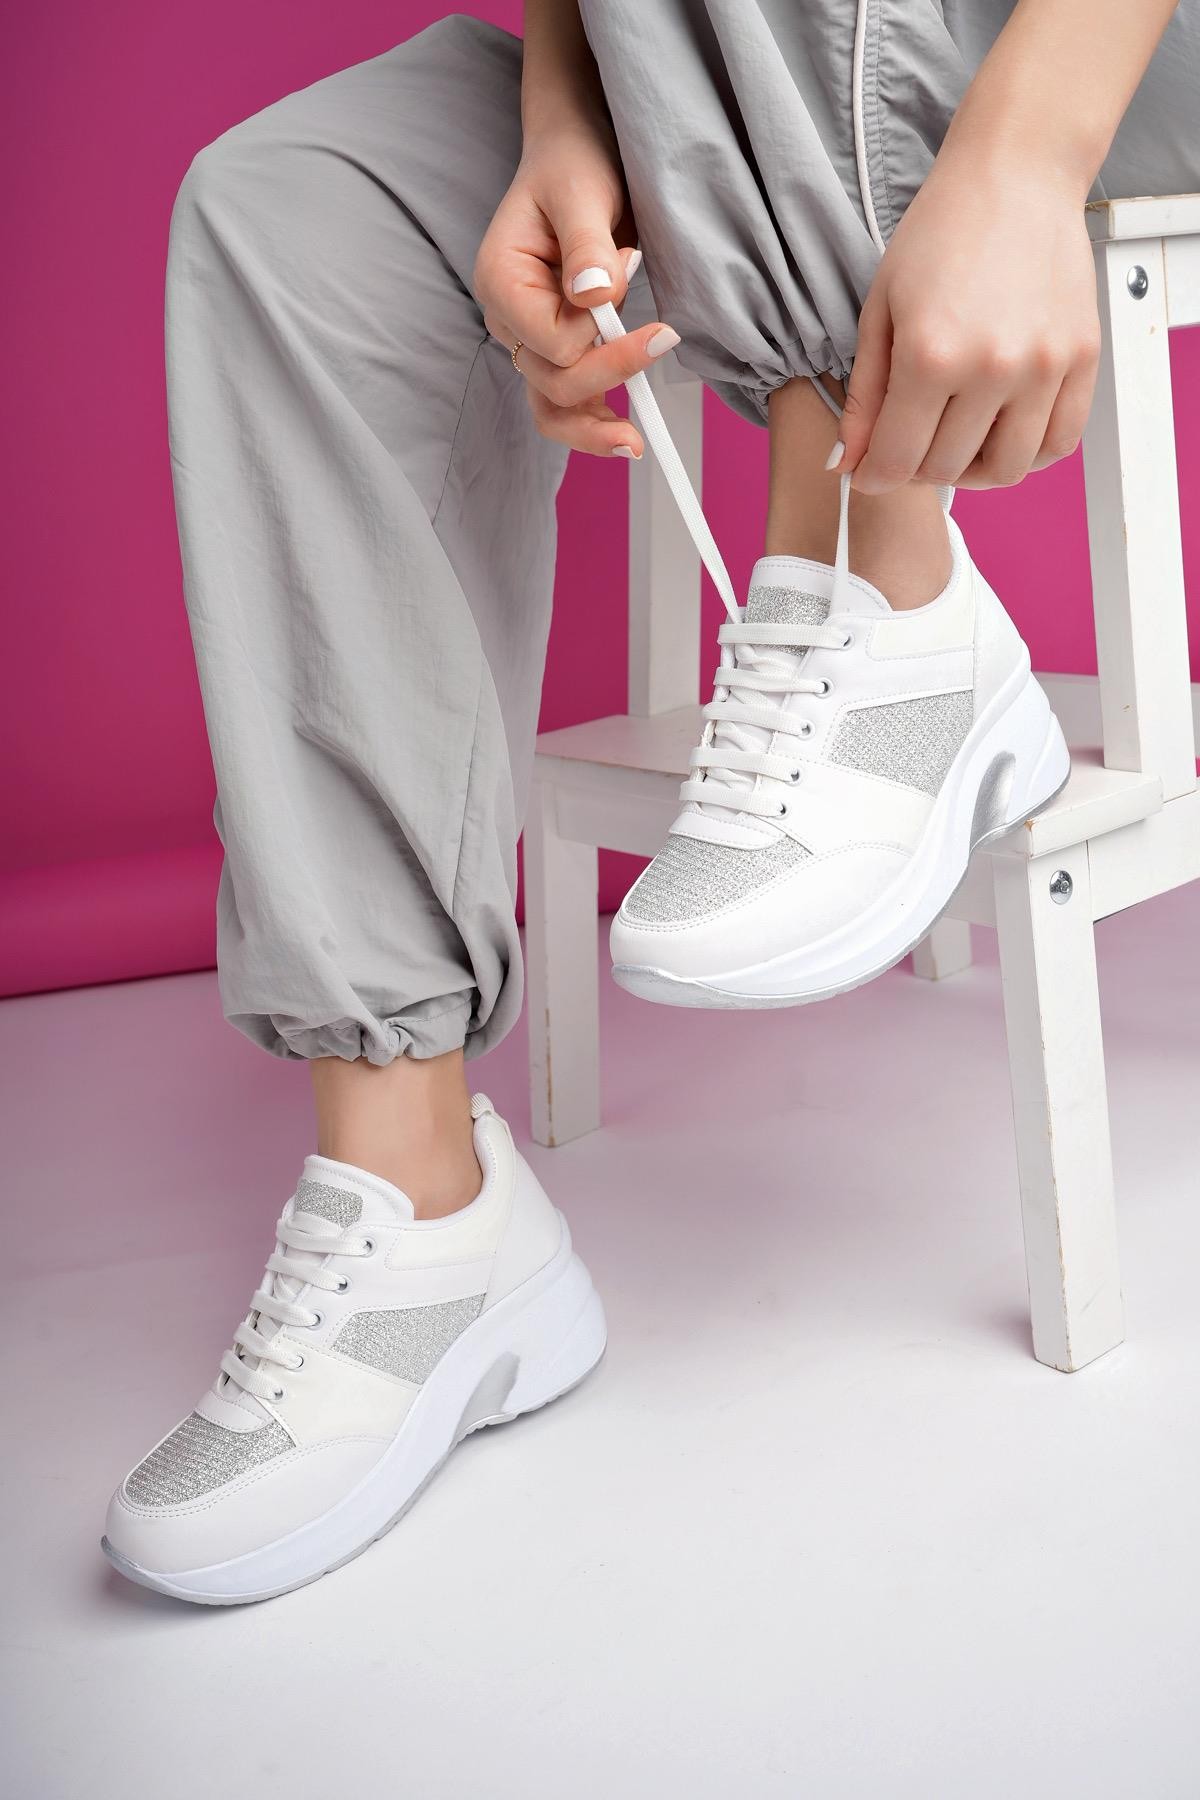 Muggo MARLON Garantili Kadın Ortopedik Yüksek Taban Günlük Bağcıklı Simli Sneaker Spor Ayakkabı - BEYAZ